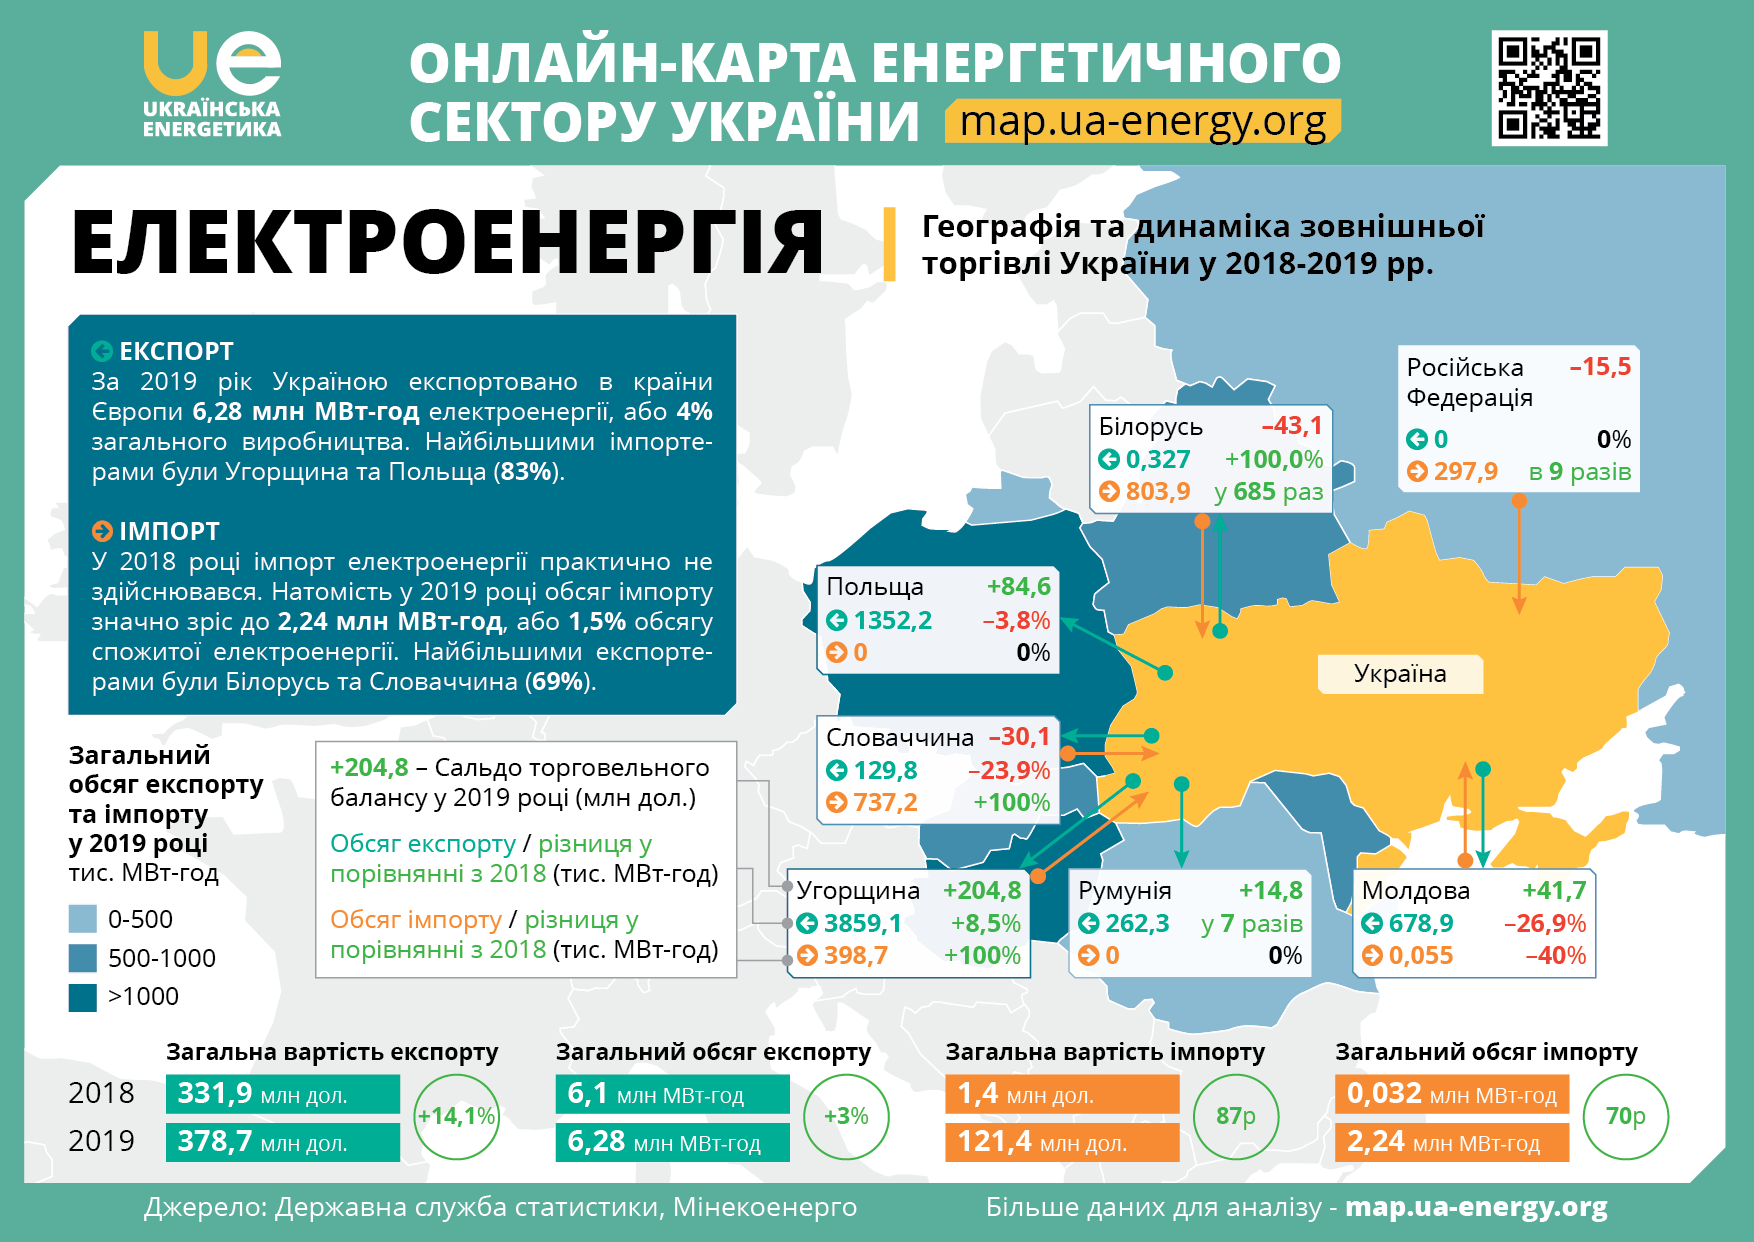 ЕЛЕКТРОЕНЕРГІЯ: динаміка зовнішньої торгівлі України у 2018-2019 рр.